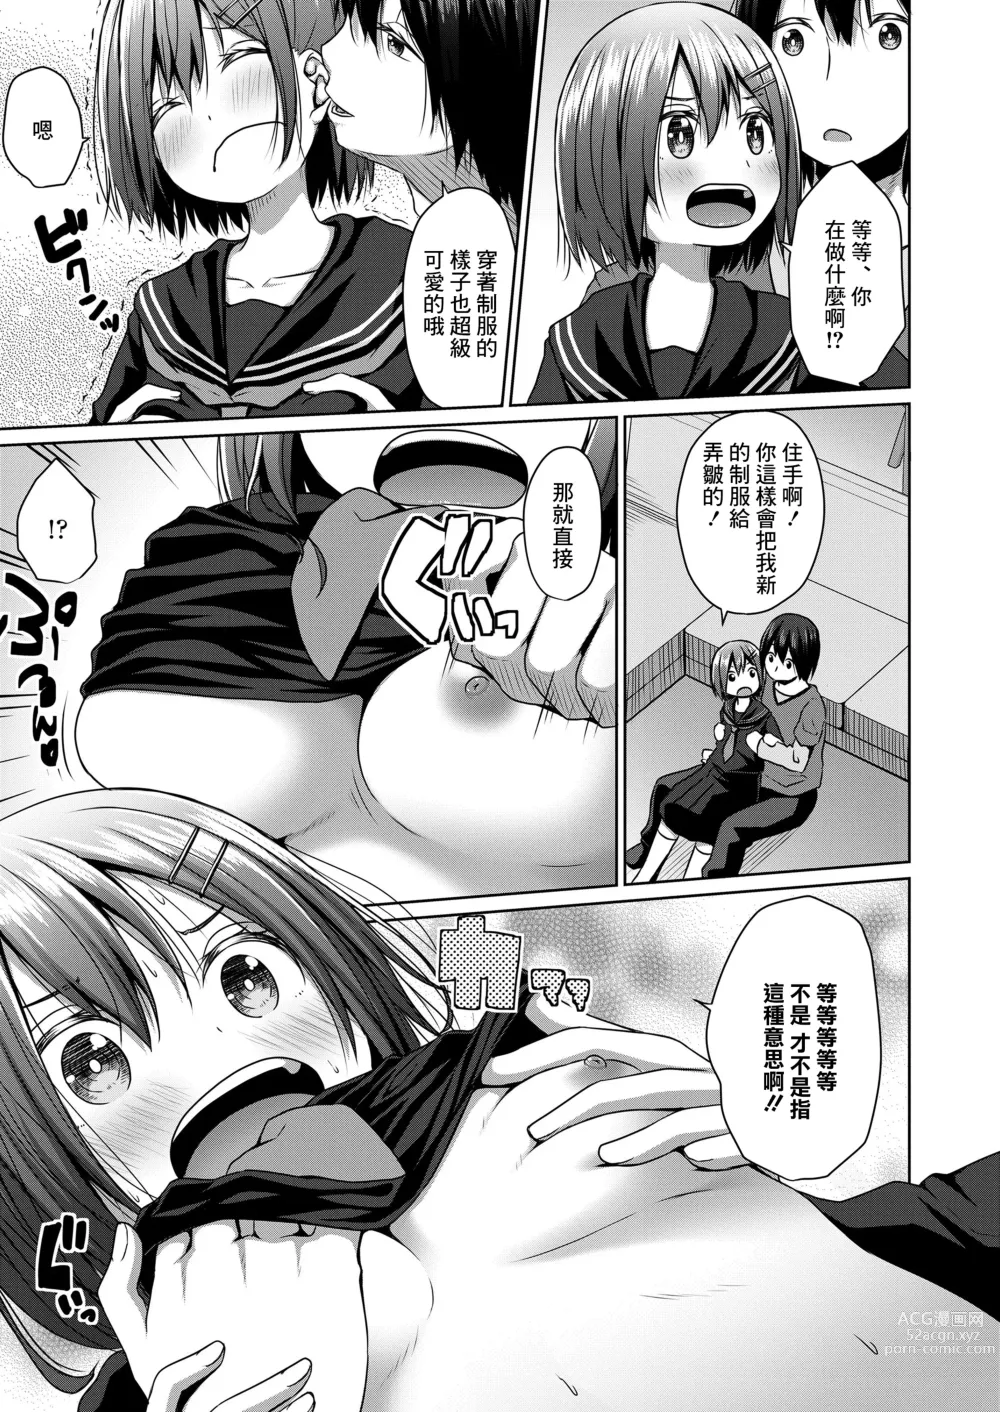 Page 5 of manga Seifuku